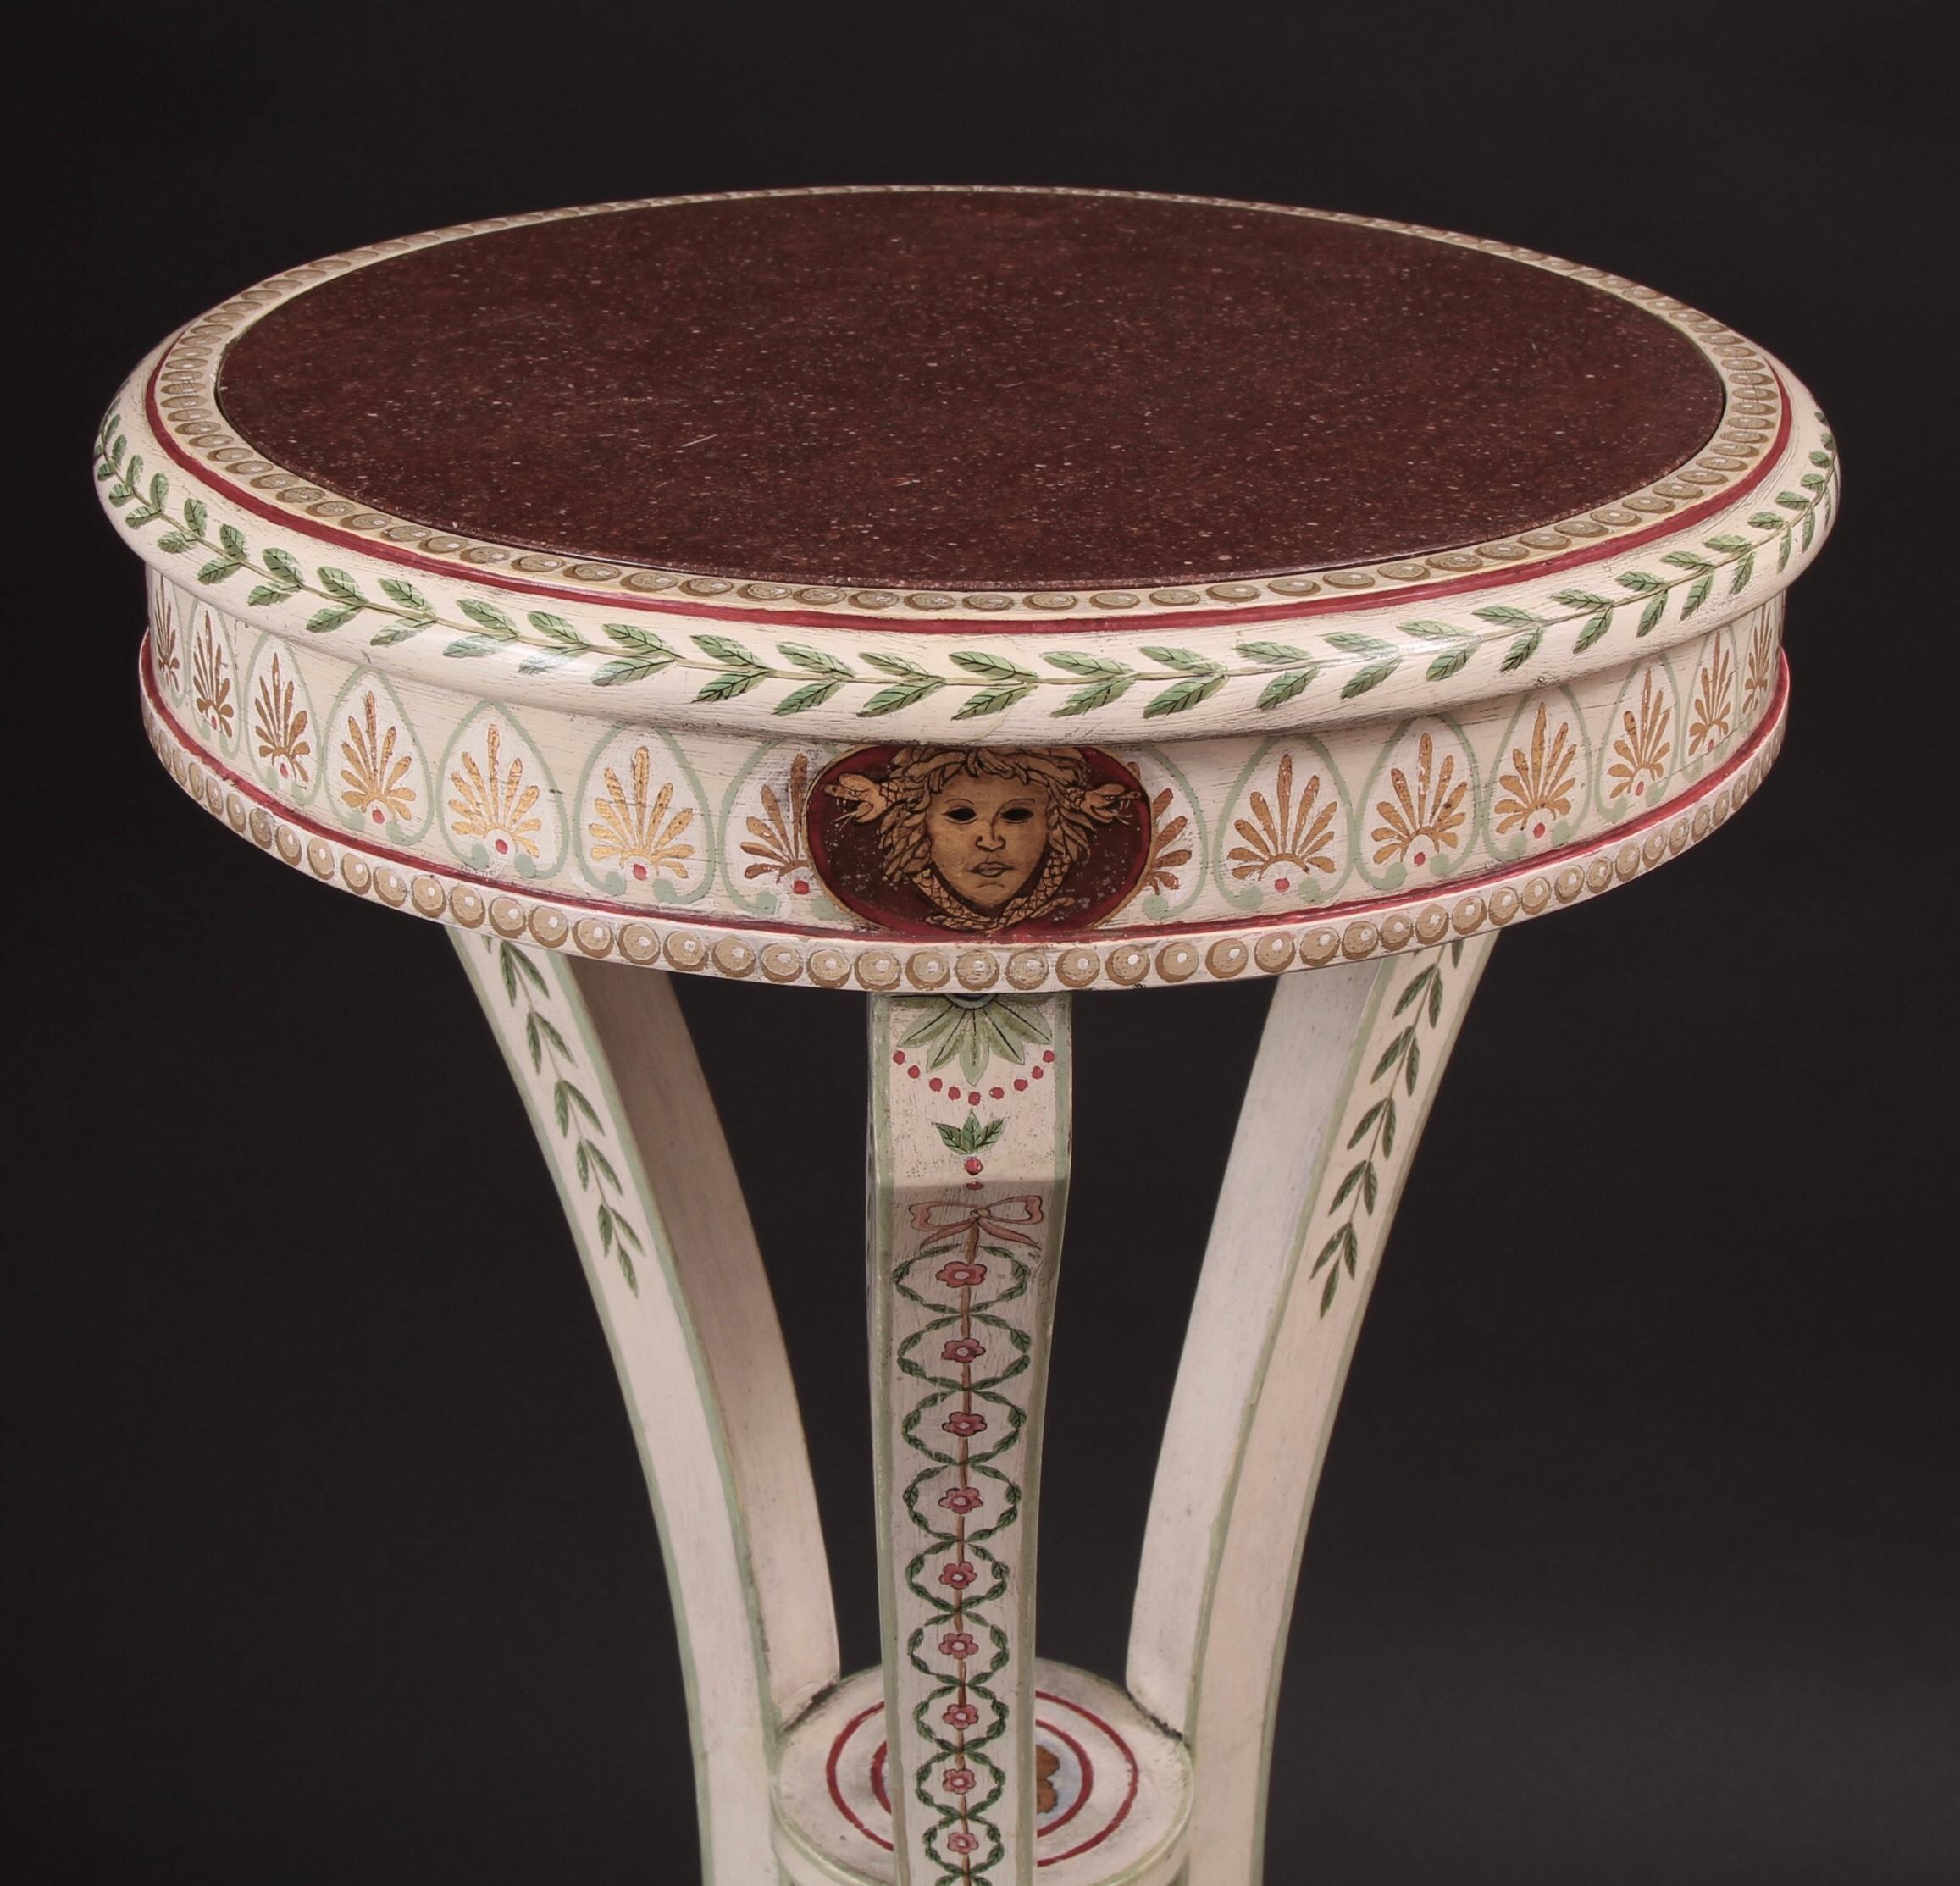 Feines Paar etruskischer neoklassizistischer bemalter, paketvergoldeter Sockel des 19. Jahrhunderts in der Art von Robert Adam. Dieses raffinierte Paar zeichnet sich durch ein außergewöhnliches und schönes neoklassisches Design aus. Der runde